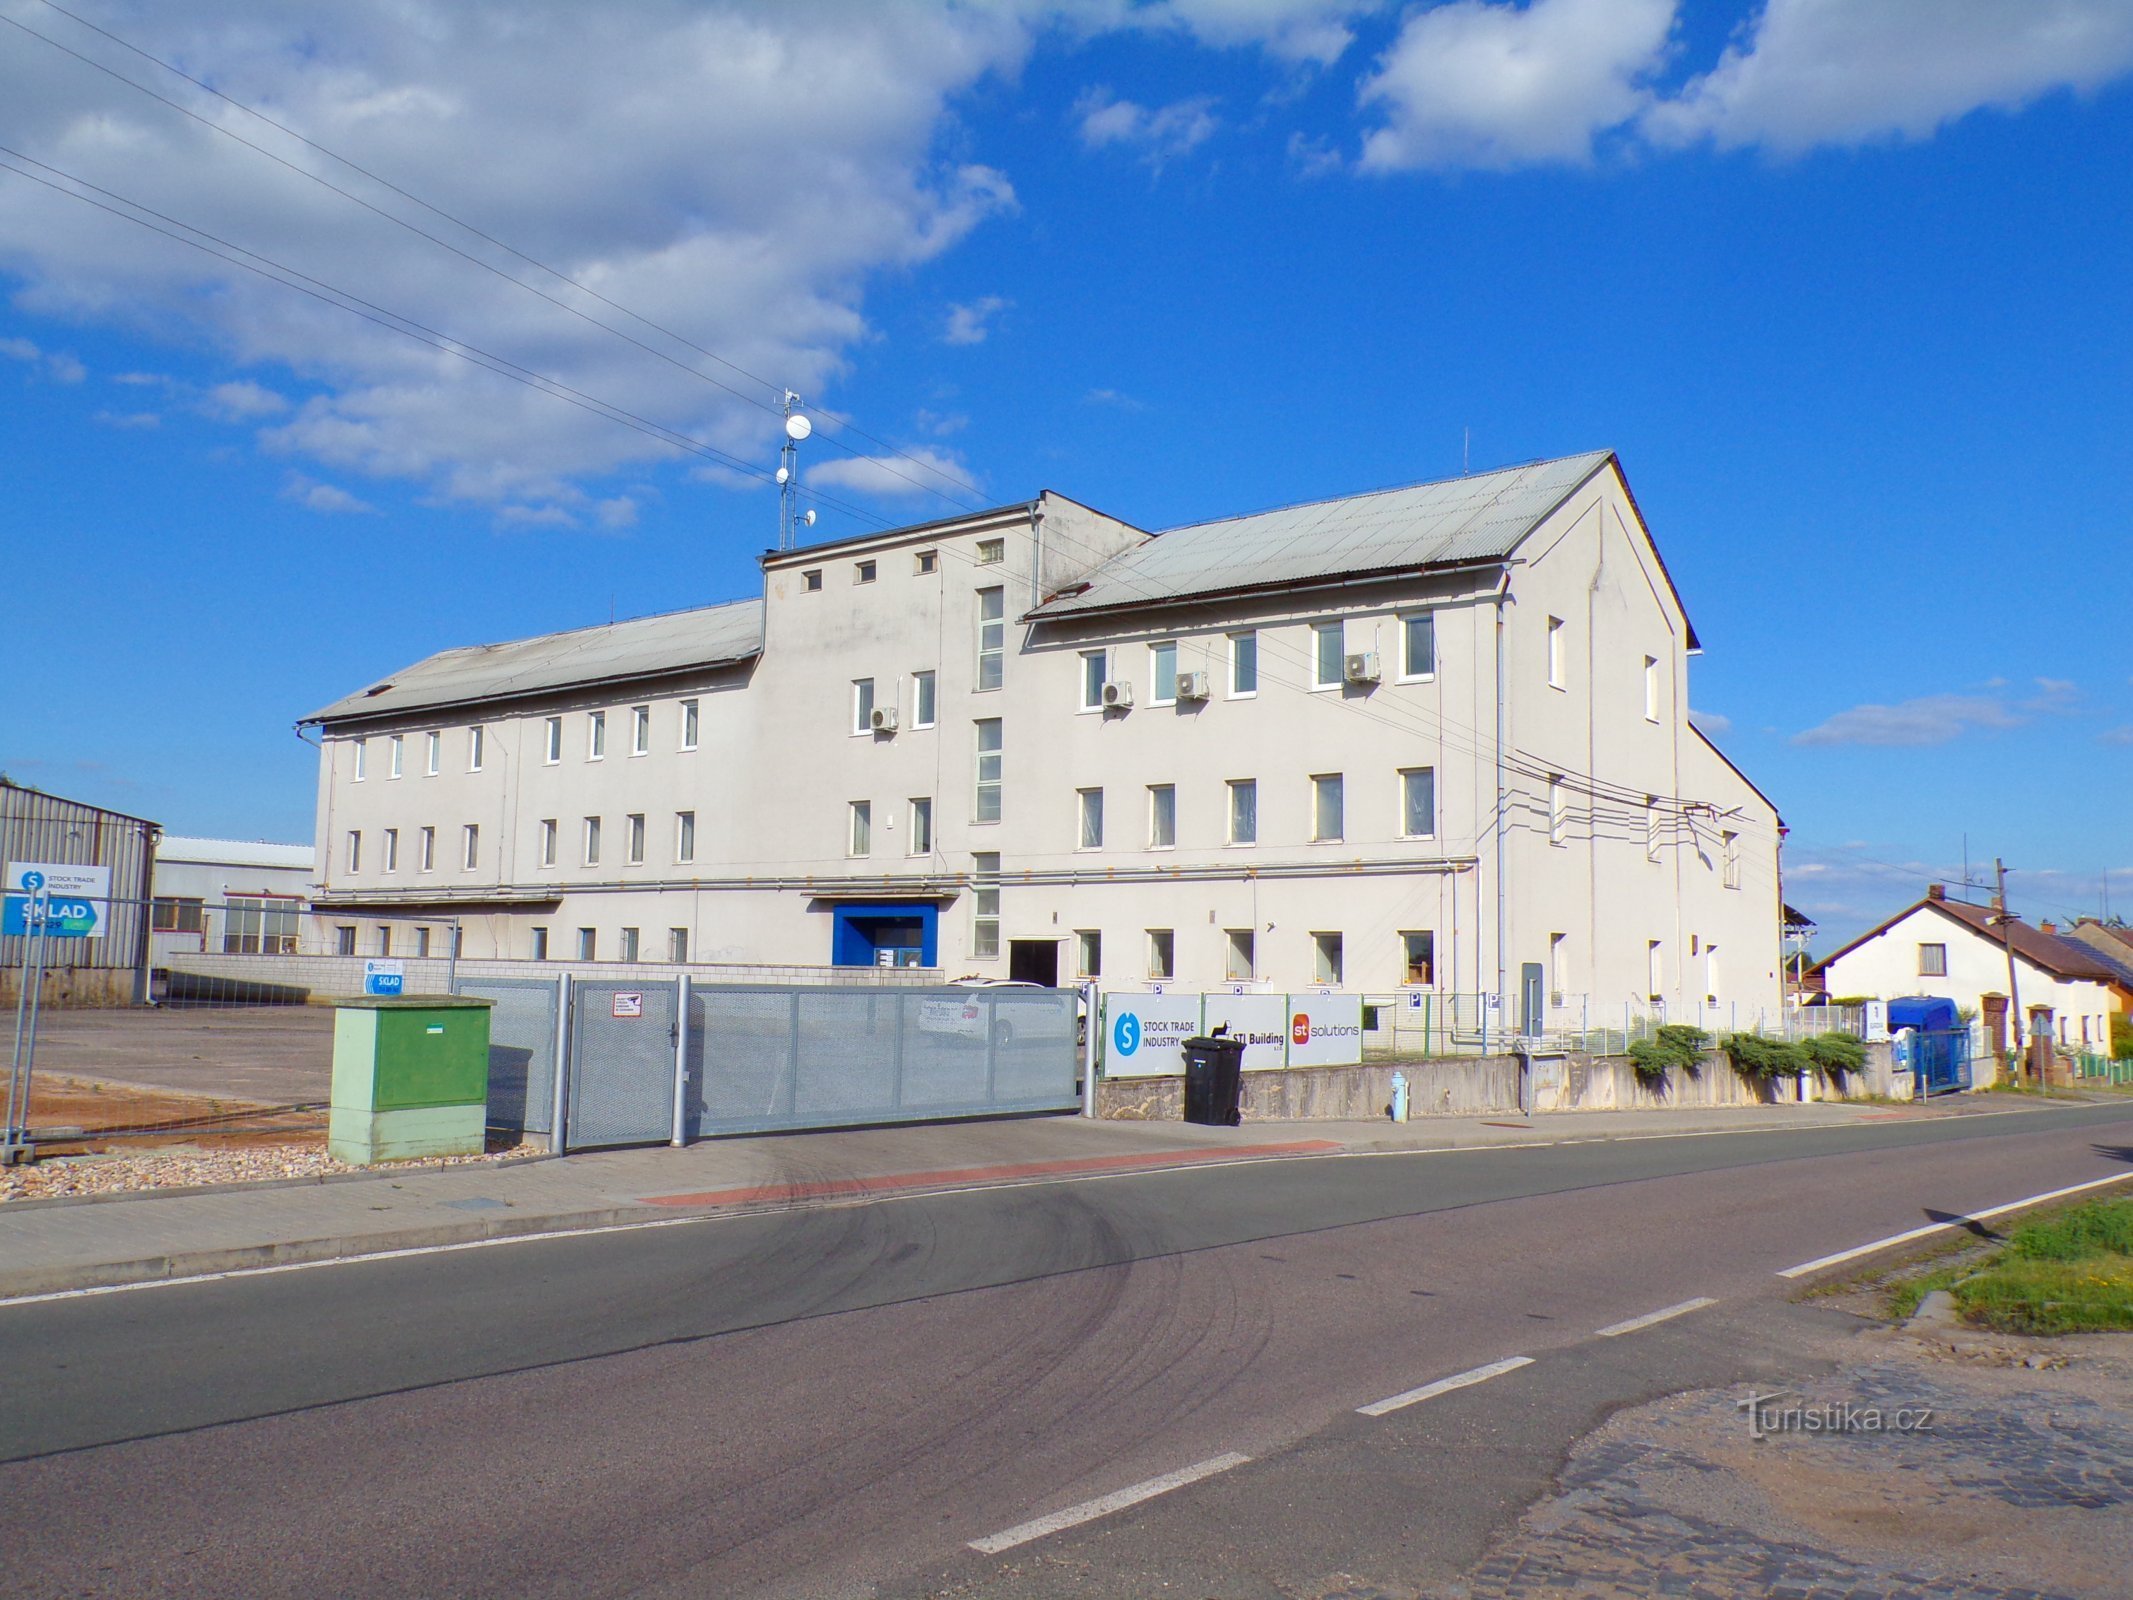 かつての協同組合チコリ乾燥工場 (Praskačka, 2.7.2022)